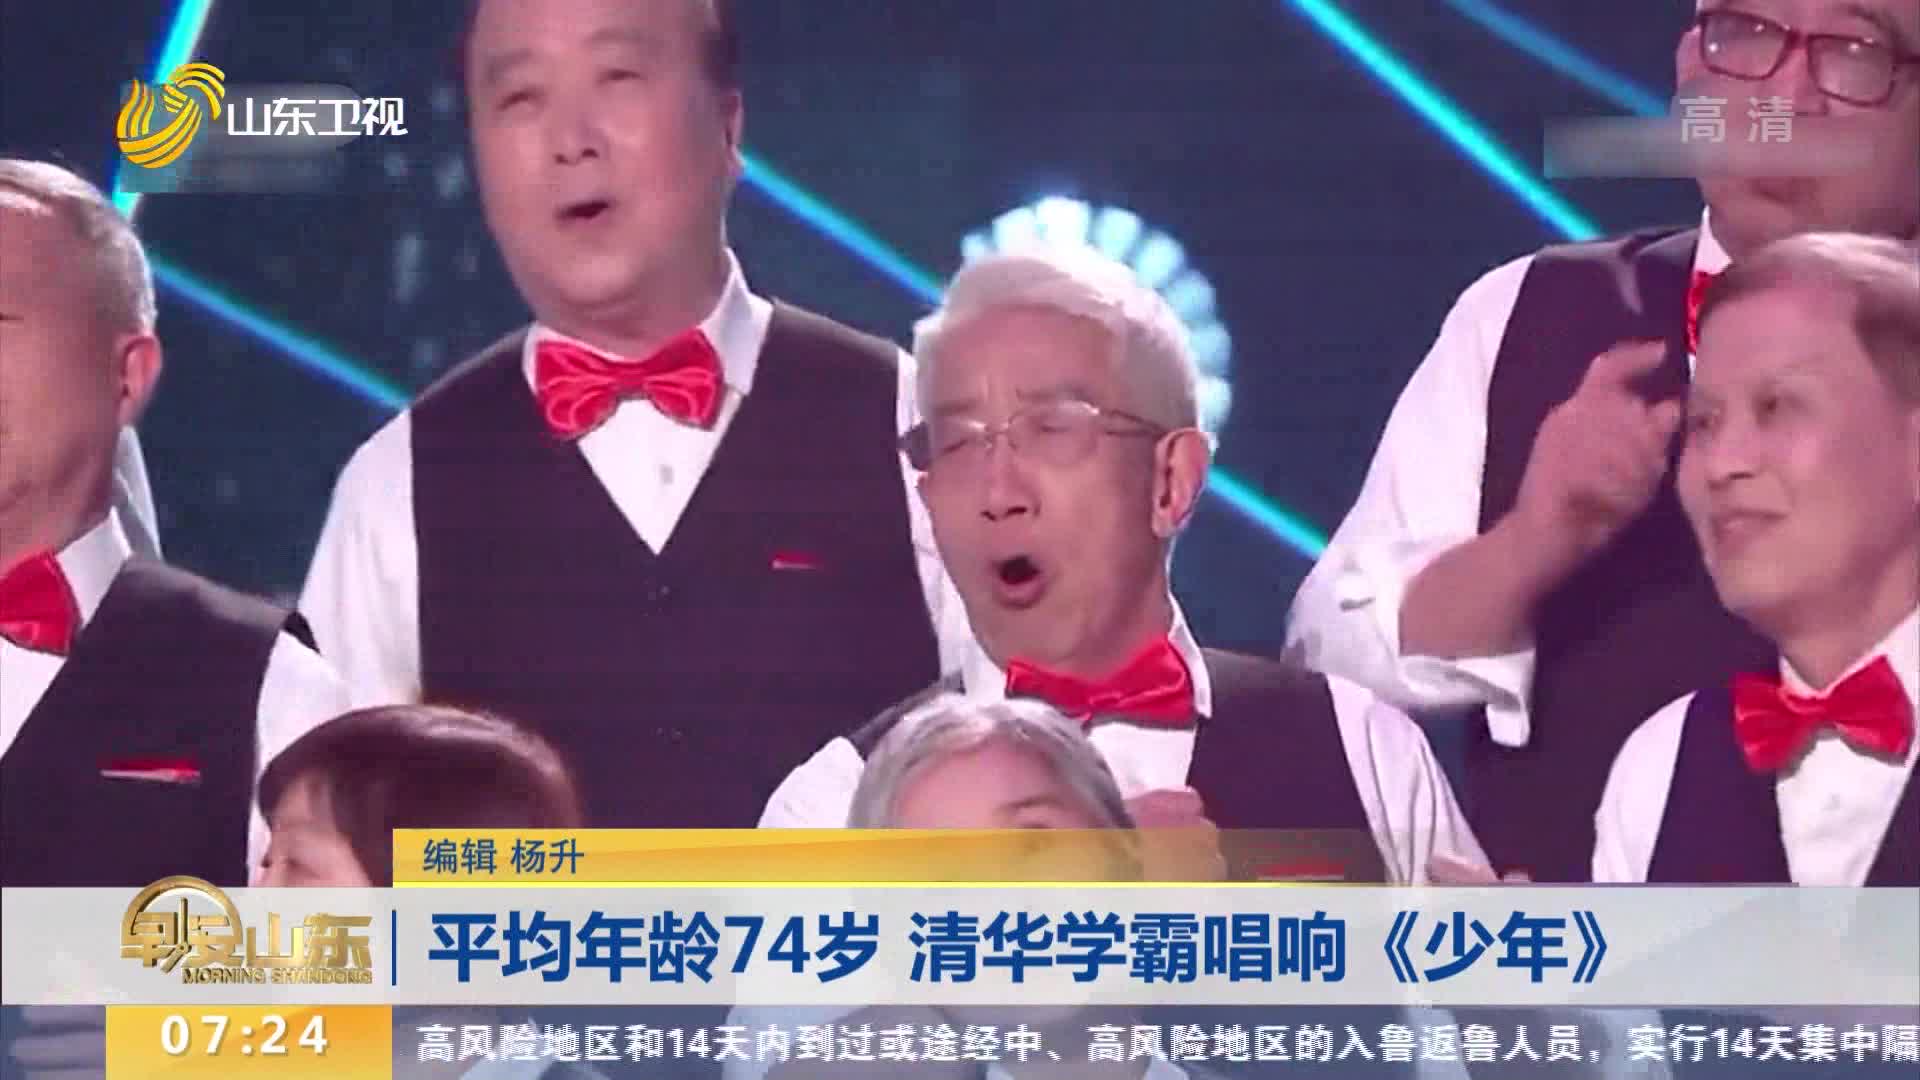 平均年龄74岁 清华学霸唱响《少年》